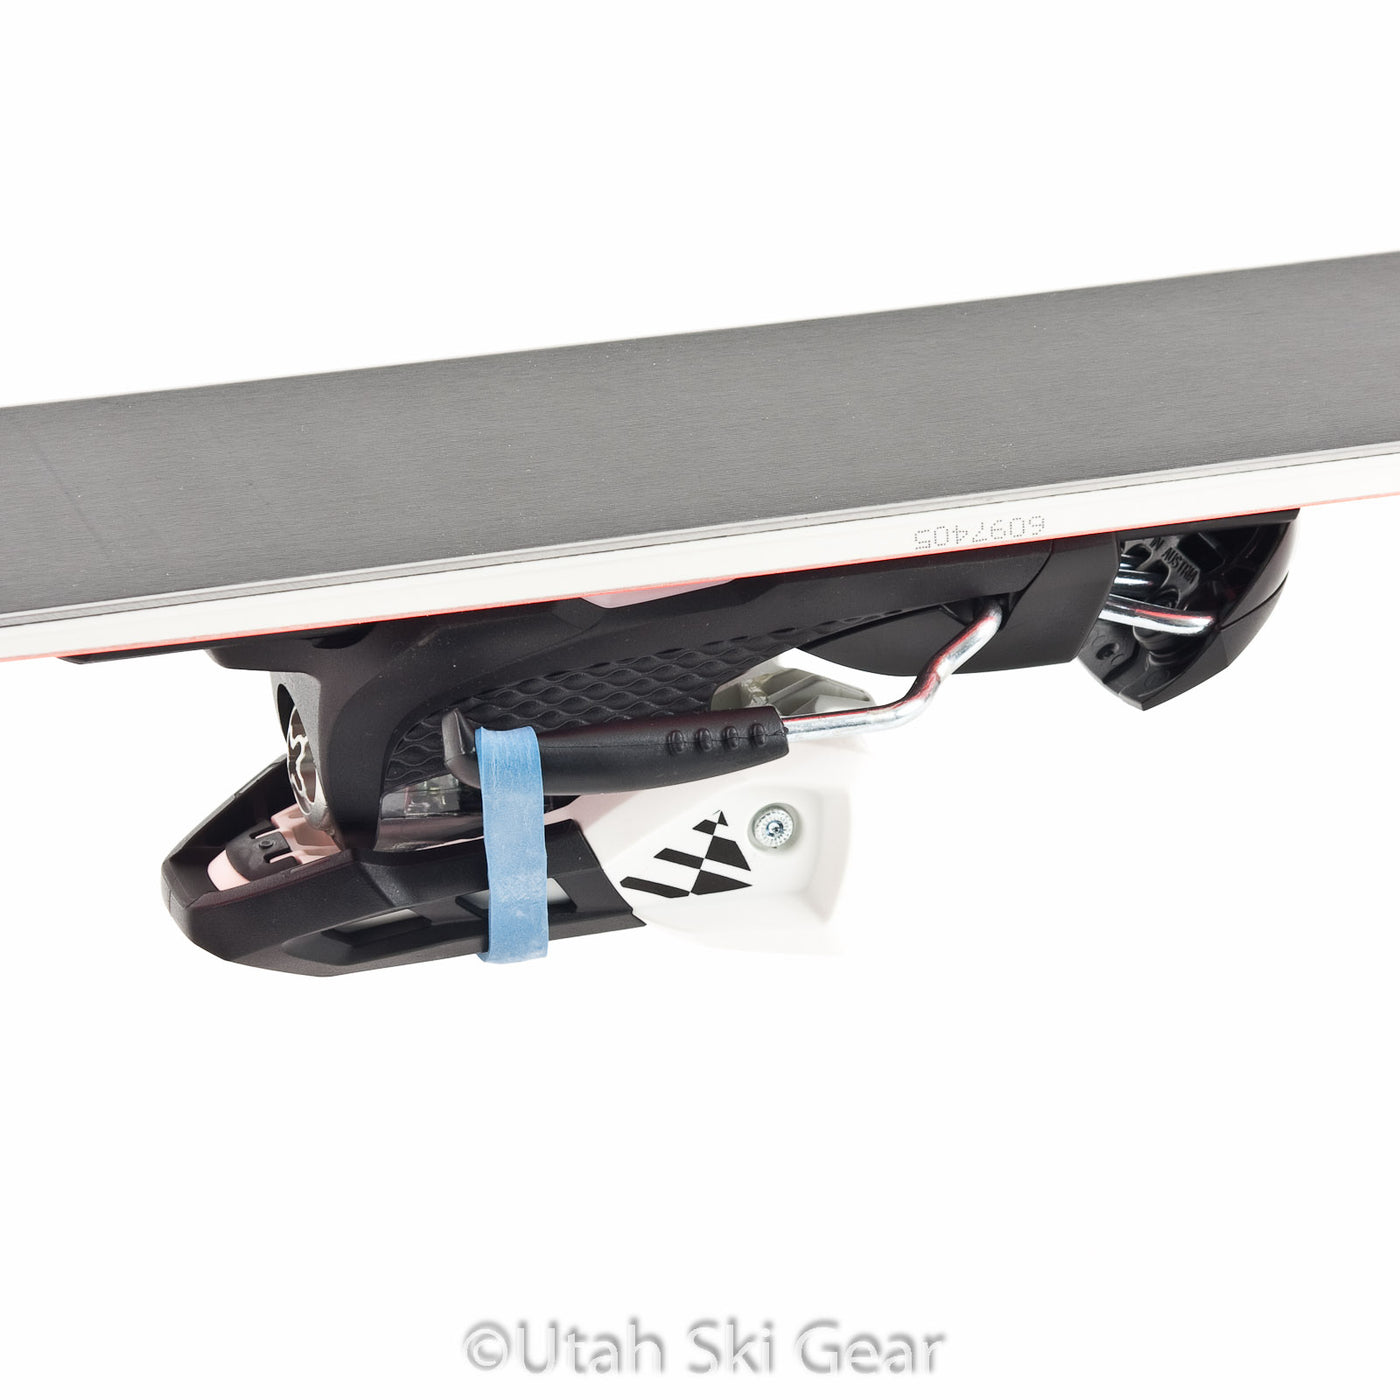 Utah Ski Gear Rubber Brake Retainers (10 Pack)